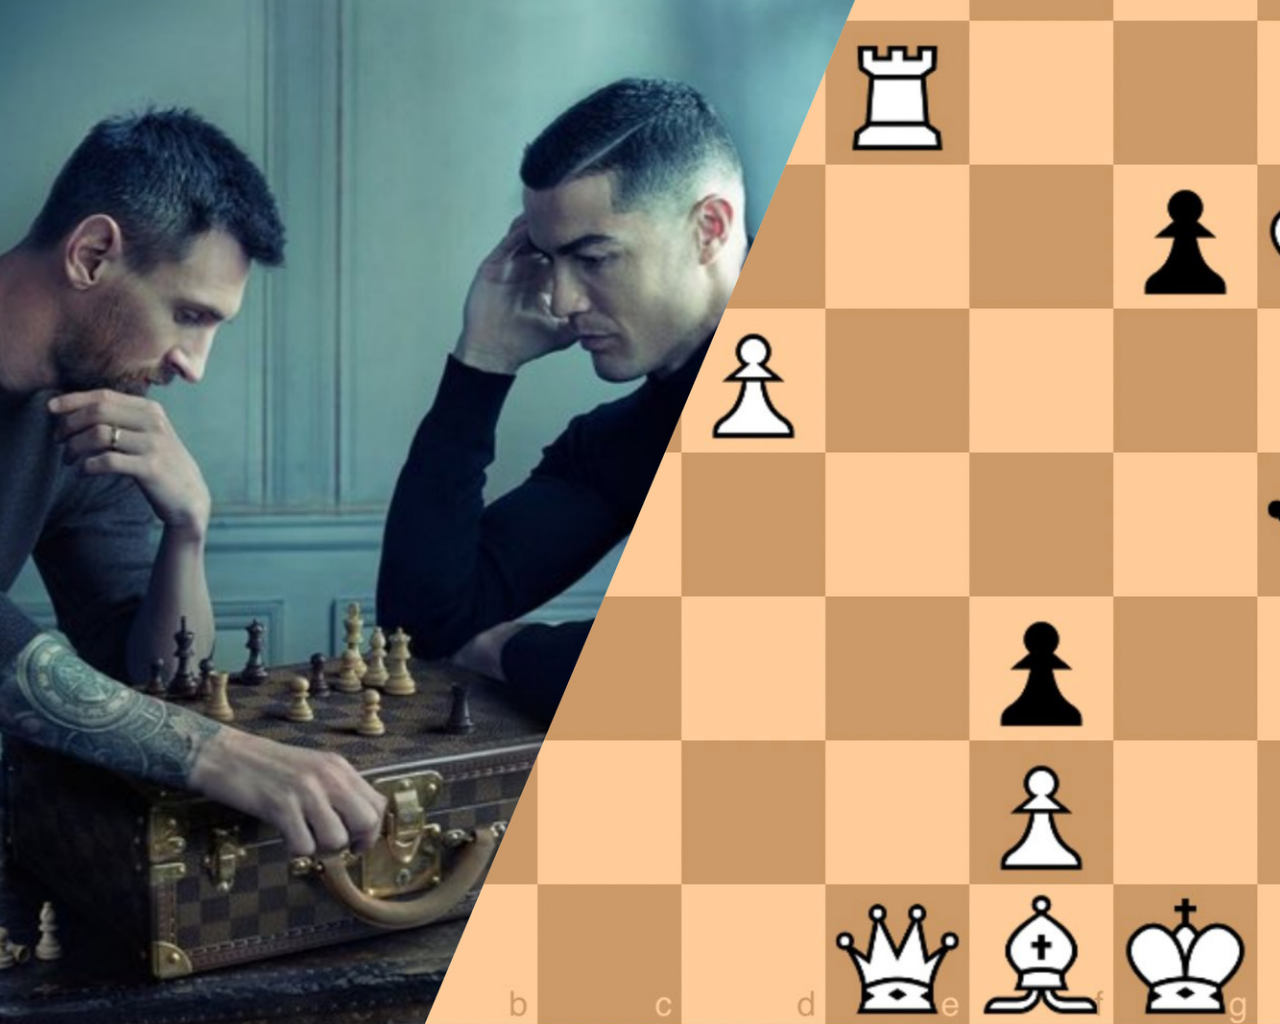 La curiosa jugada de ajedrez de Messi y Cristiano con Louis Vuitton